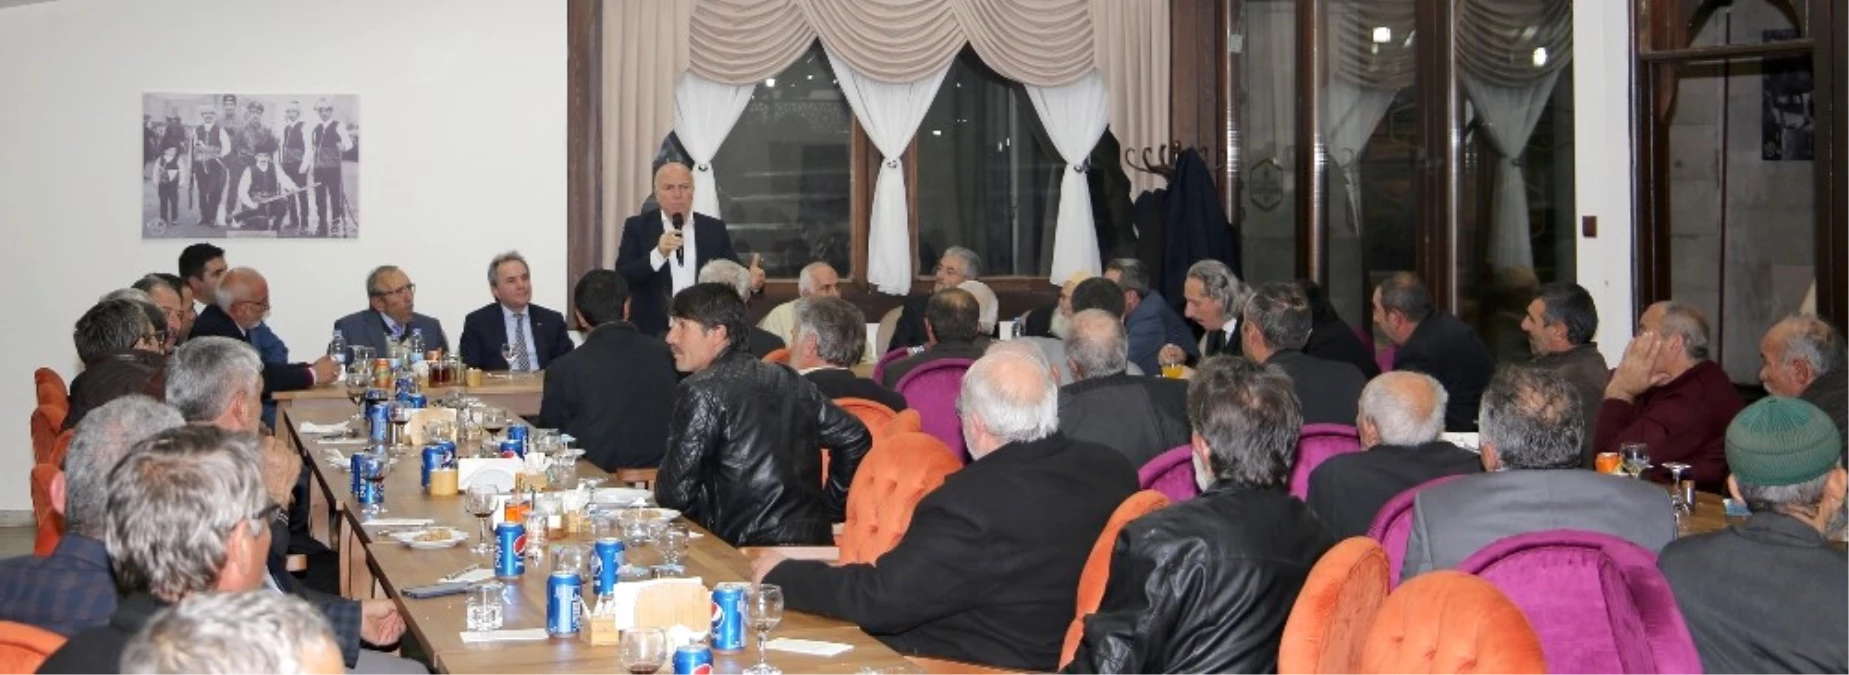 Başkan Sekmen: "Erzurum İlçeleriyle Birlikte Güzelleşti"